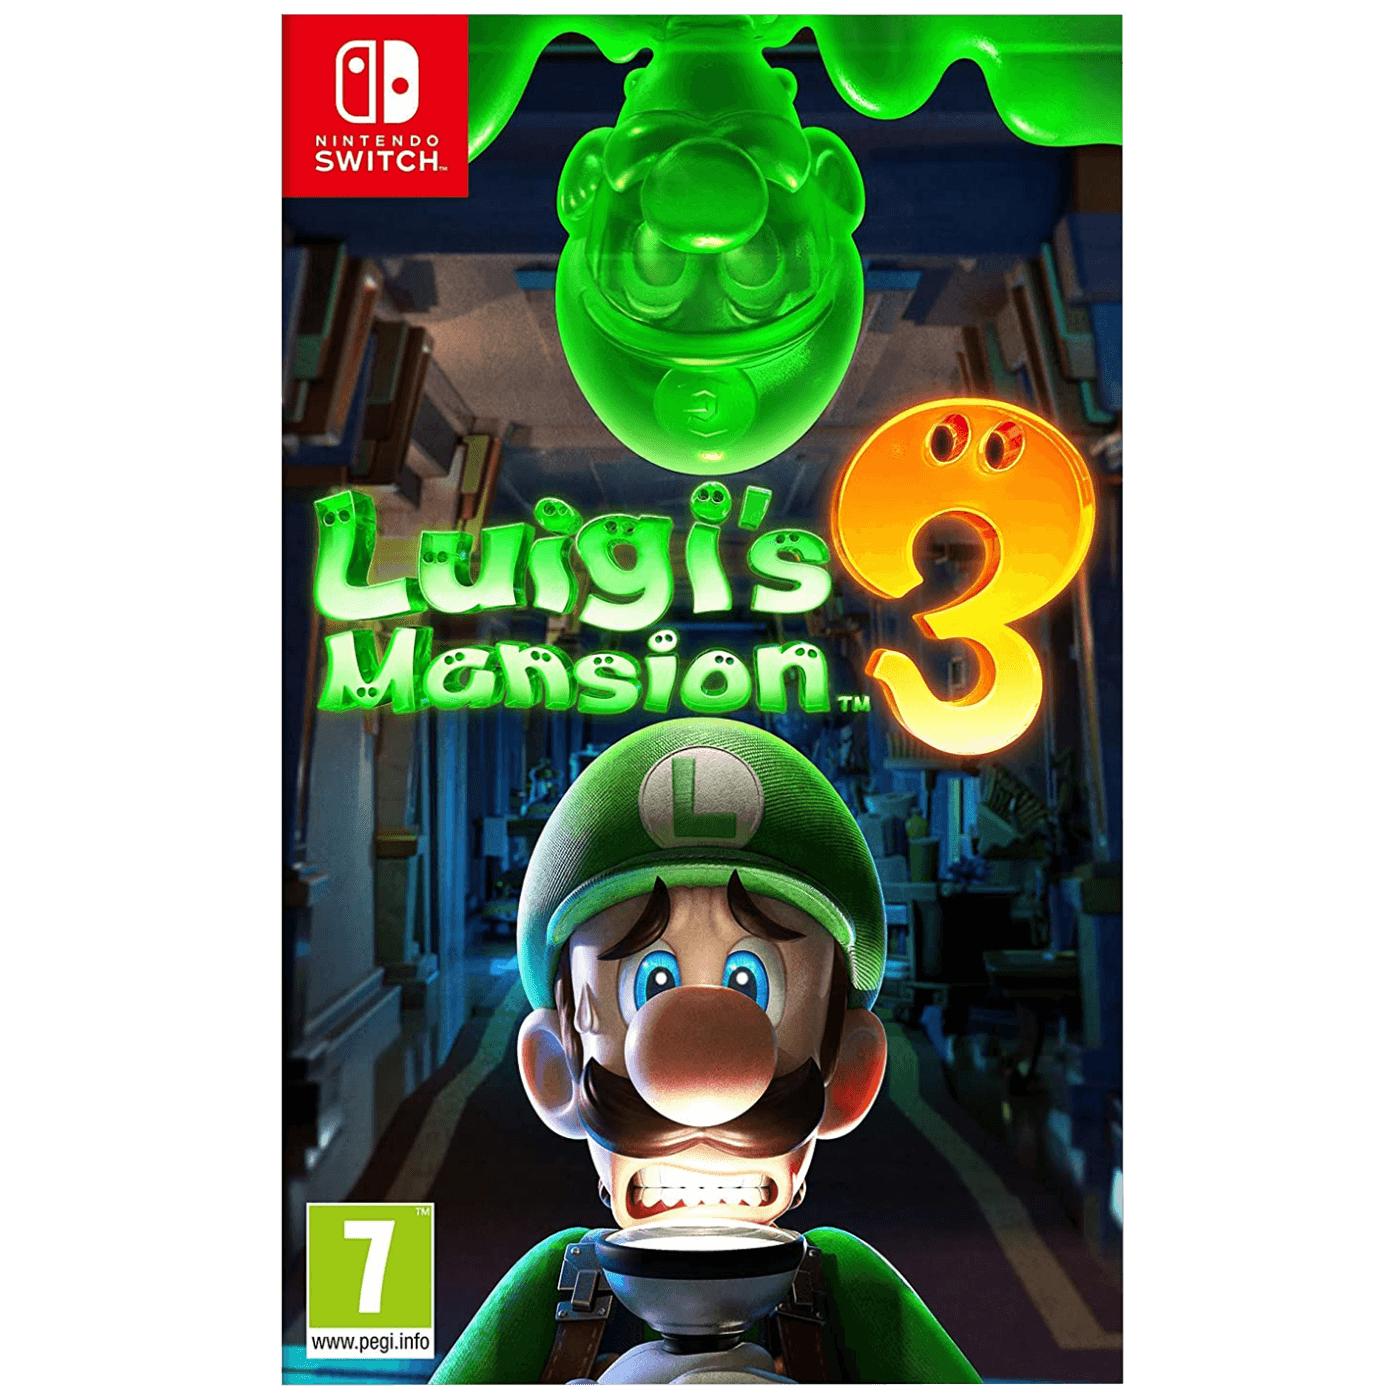 Igra za Nintendo Switch: Luigi's Mansion 3